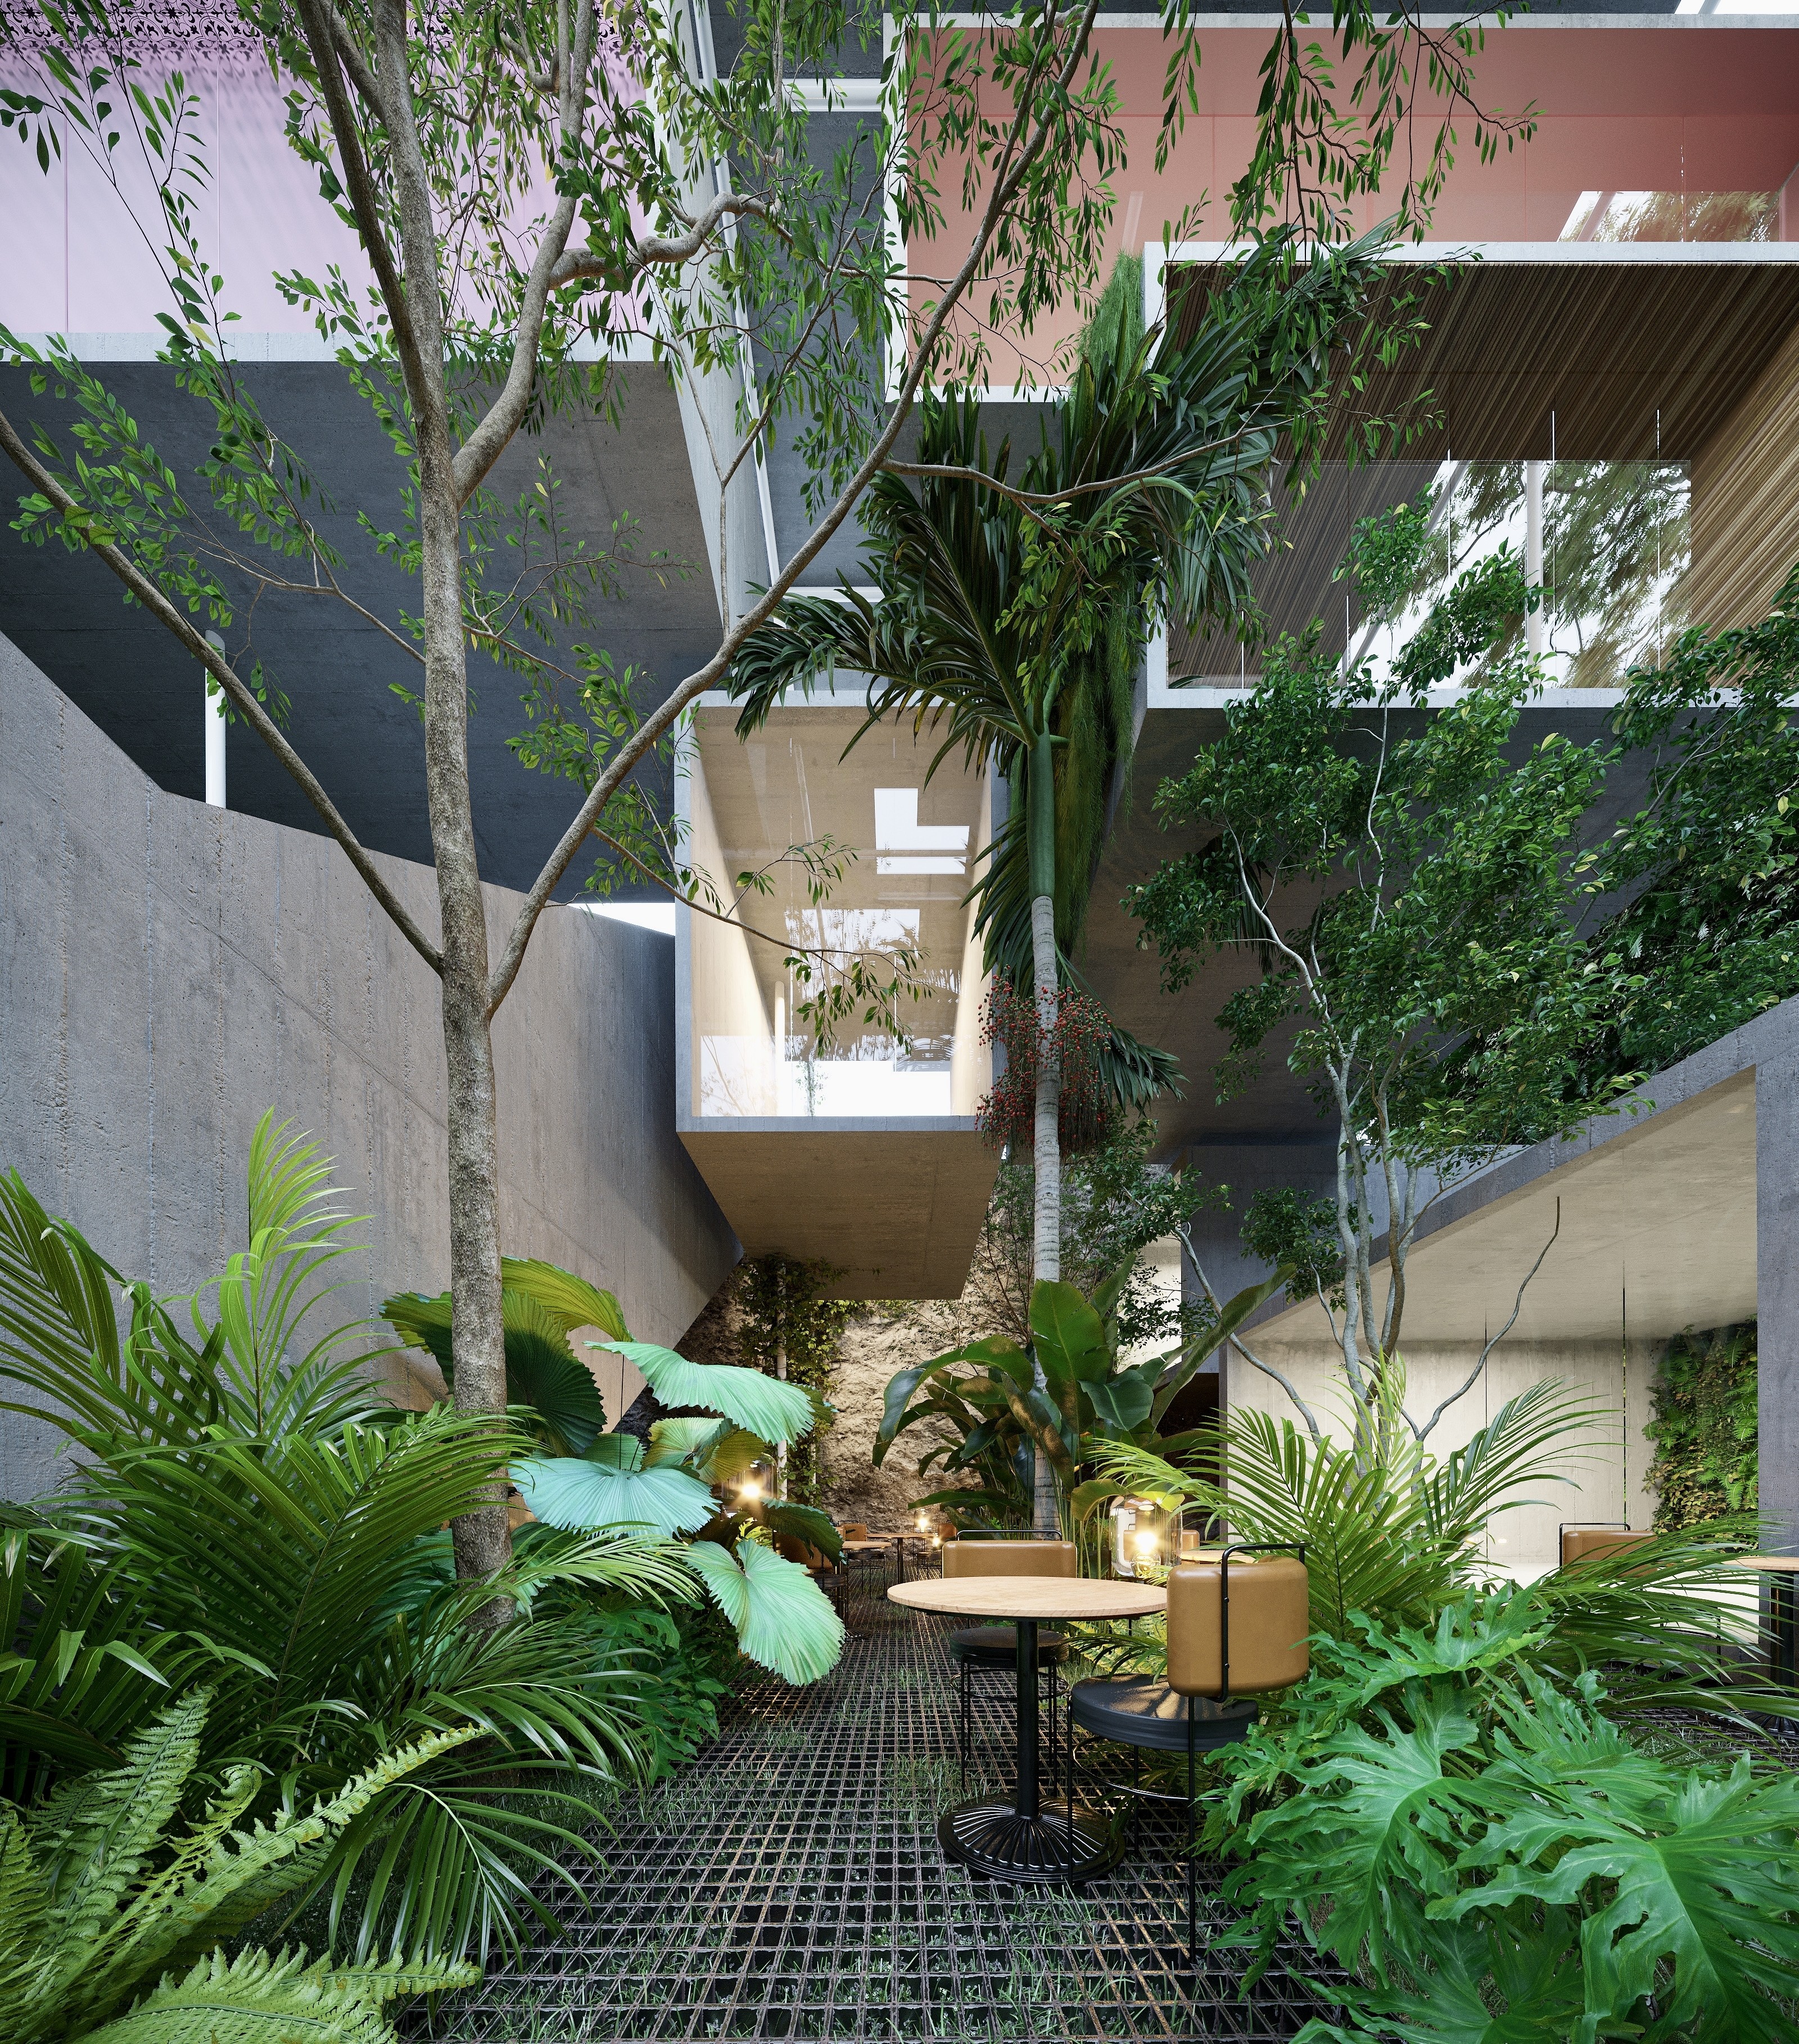 Novo hotel de luxo em São Paulo transportará hóspedes para o mundo da arte (Foto: Divulgação)